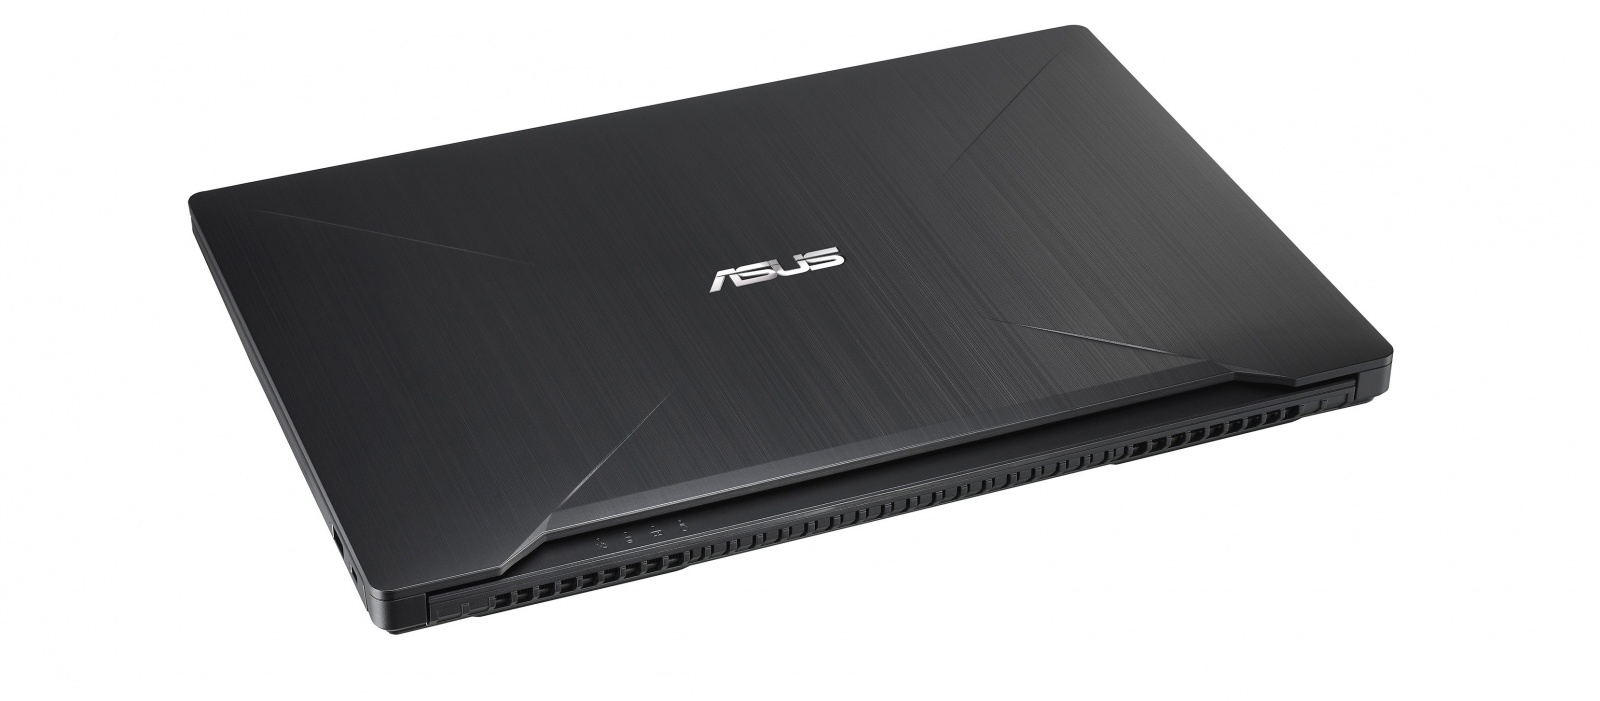 компактный и легкий 2.5 кг ноутбук ASUS FX503VD